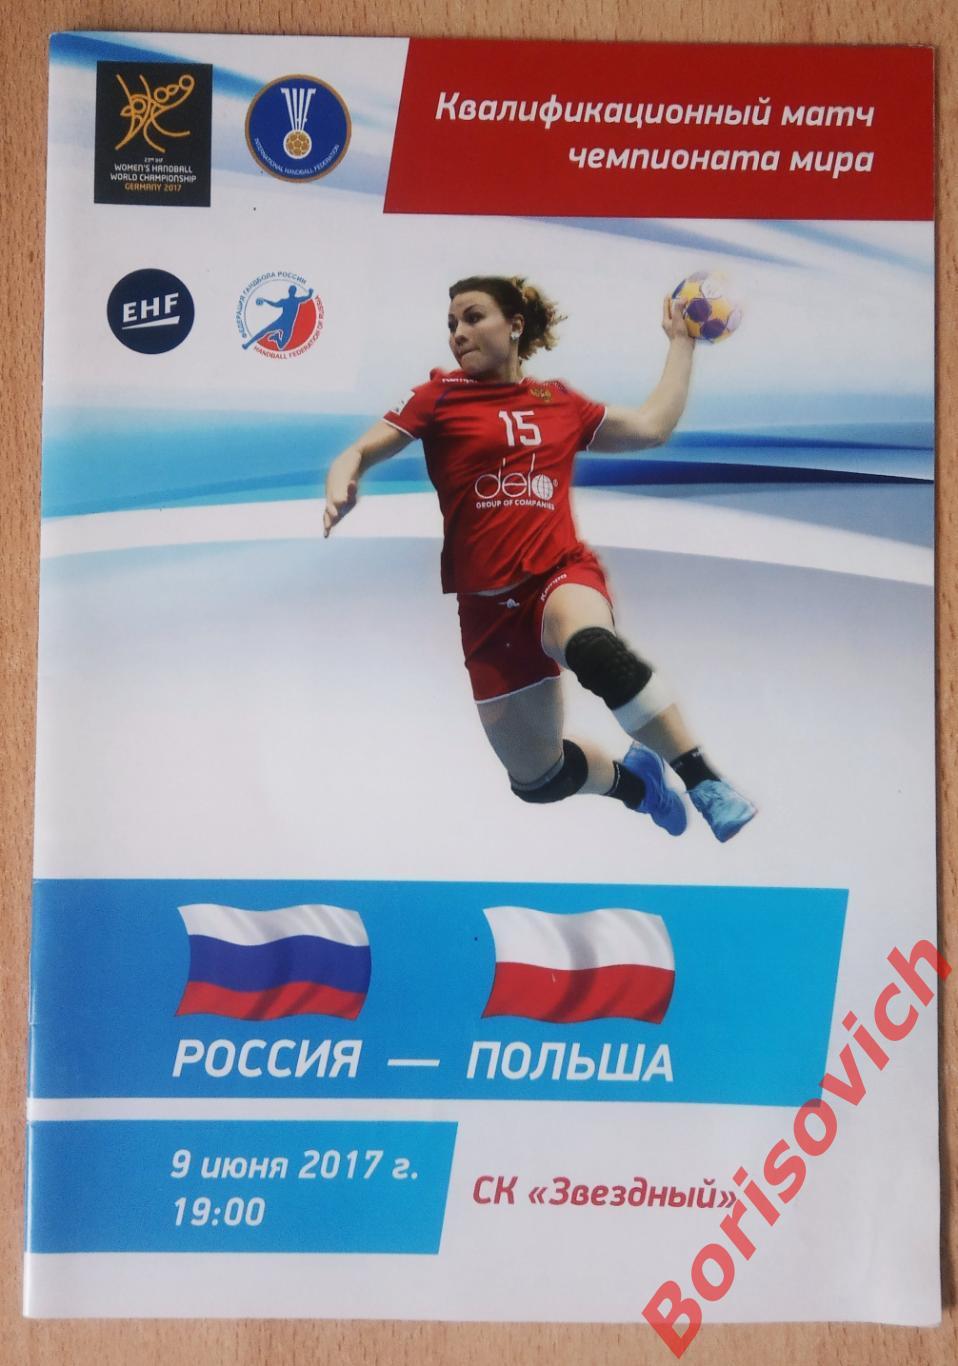 Россия - Польша 09-06-2017 Квалификационный матч чемпионата мира